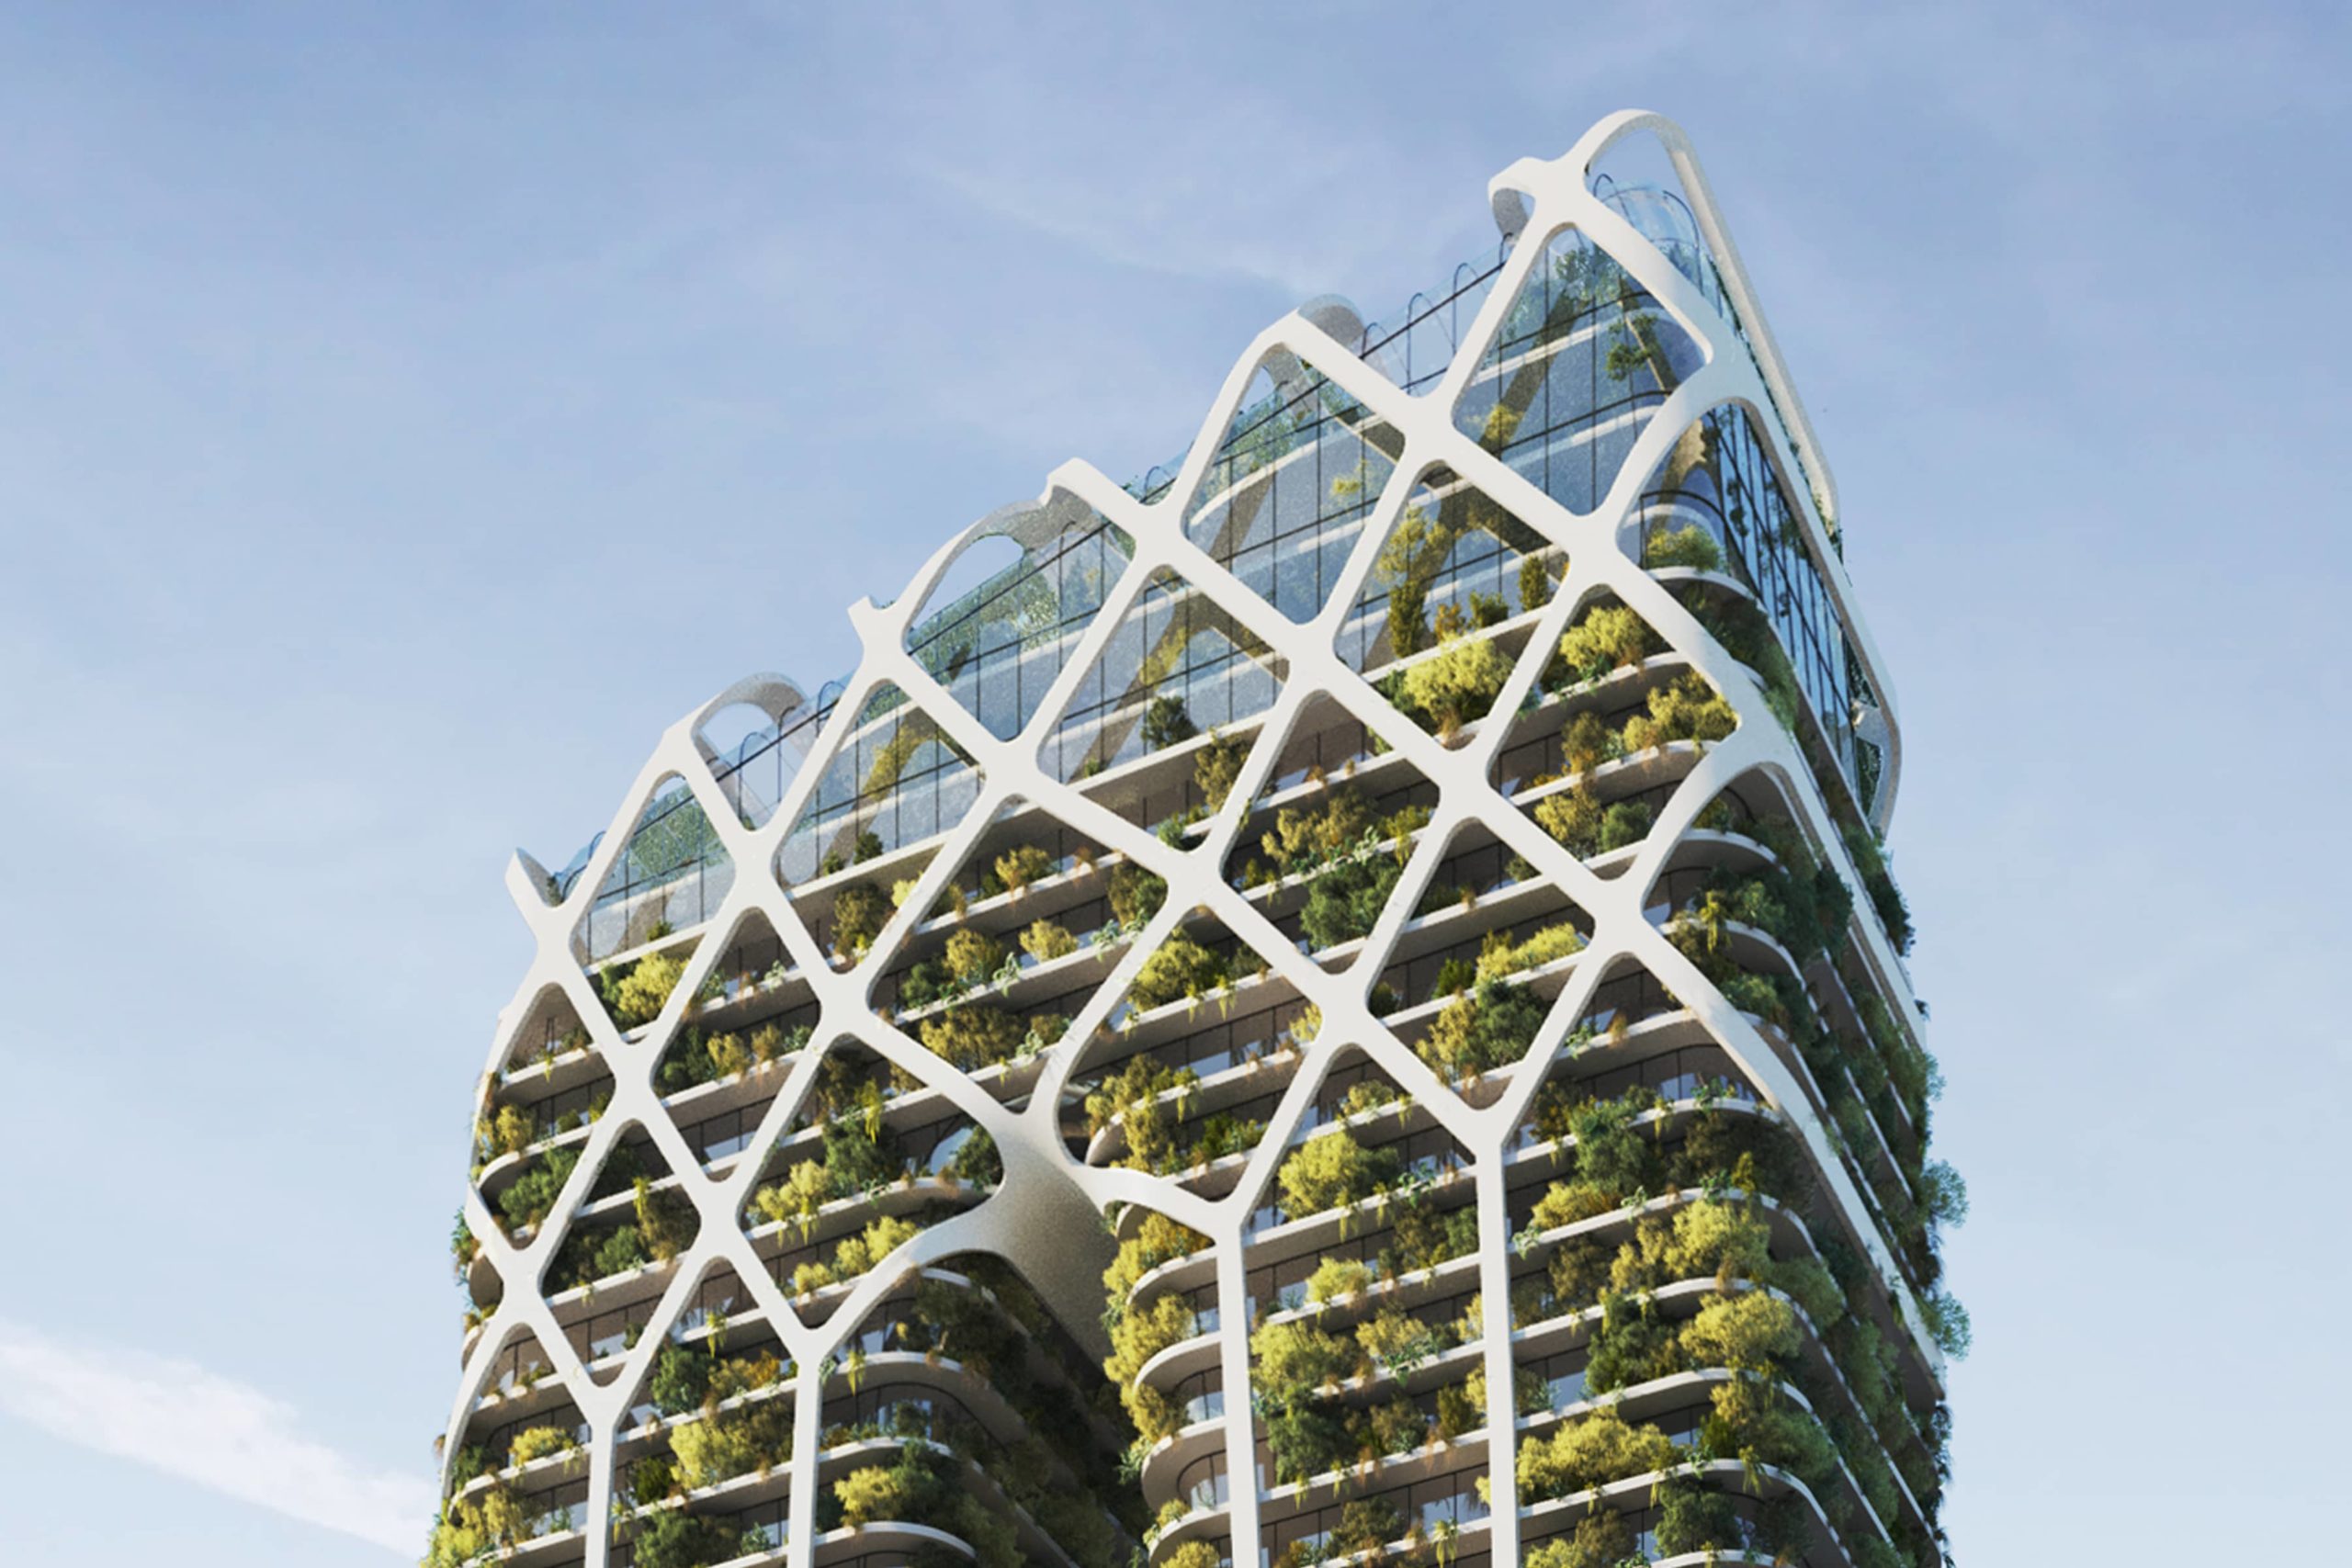 Proyecto que utilizamos la bioarquitectura para crear un edificio green de lujo y para conectar de nuevo con la naturaleza en espacios urbanos.